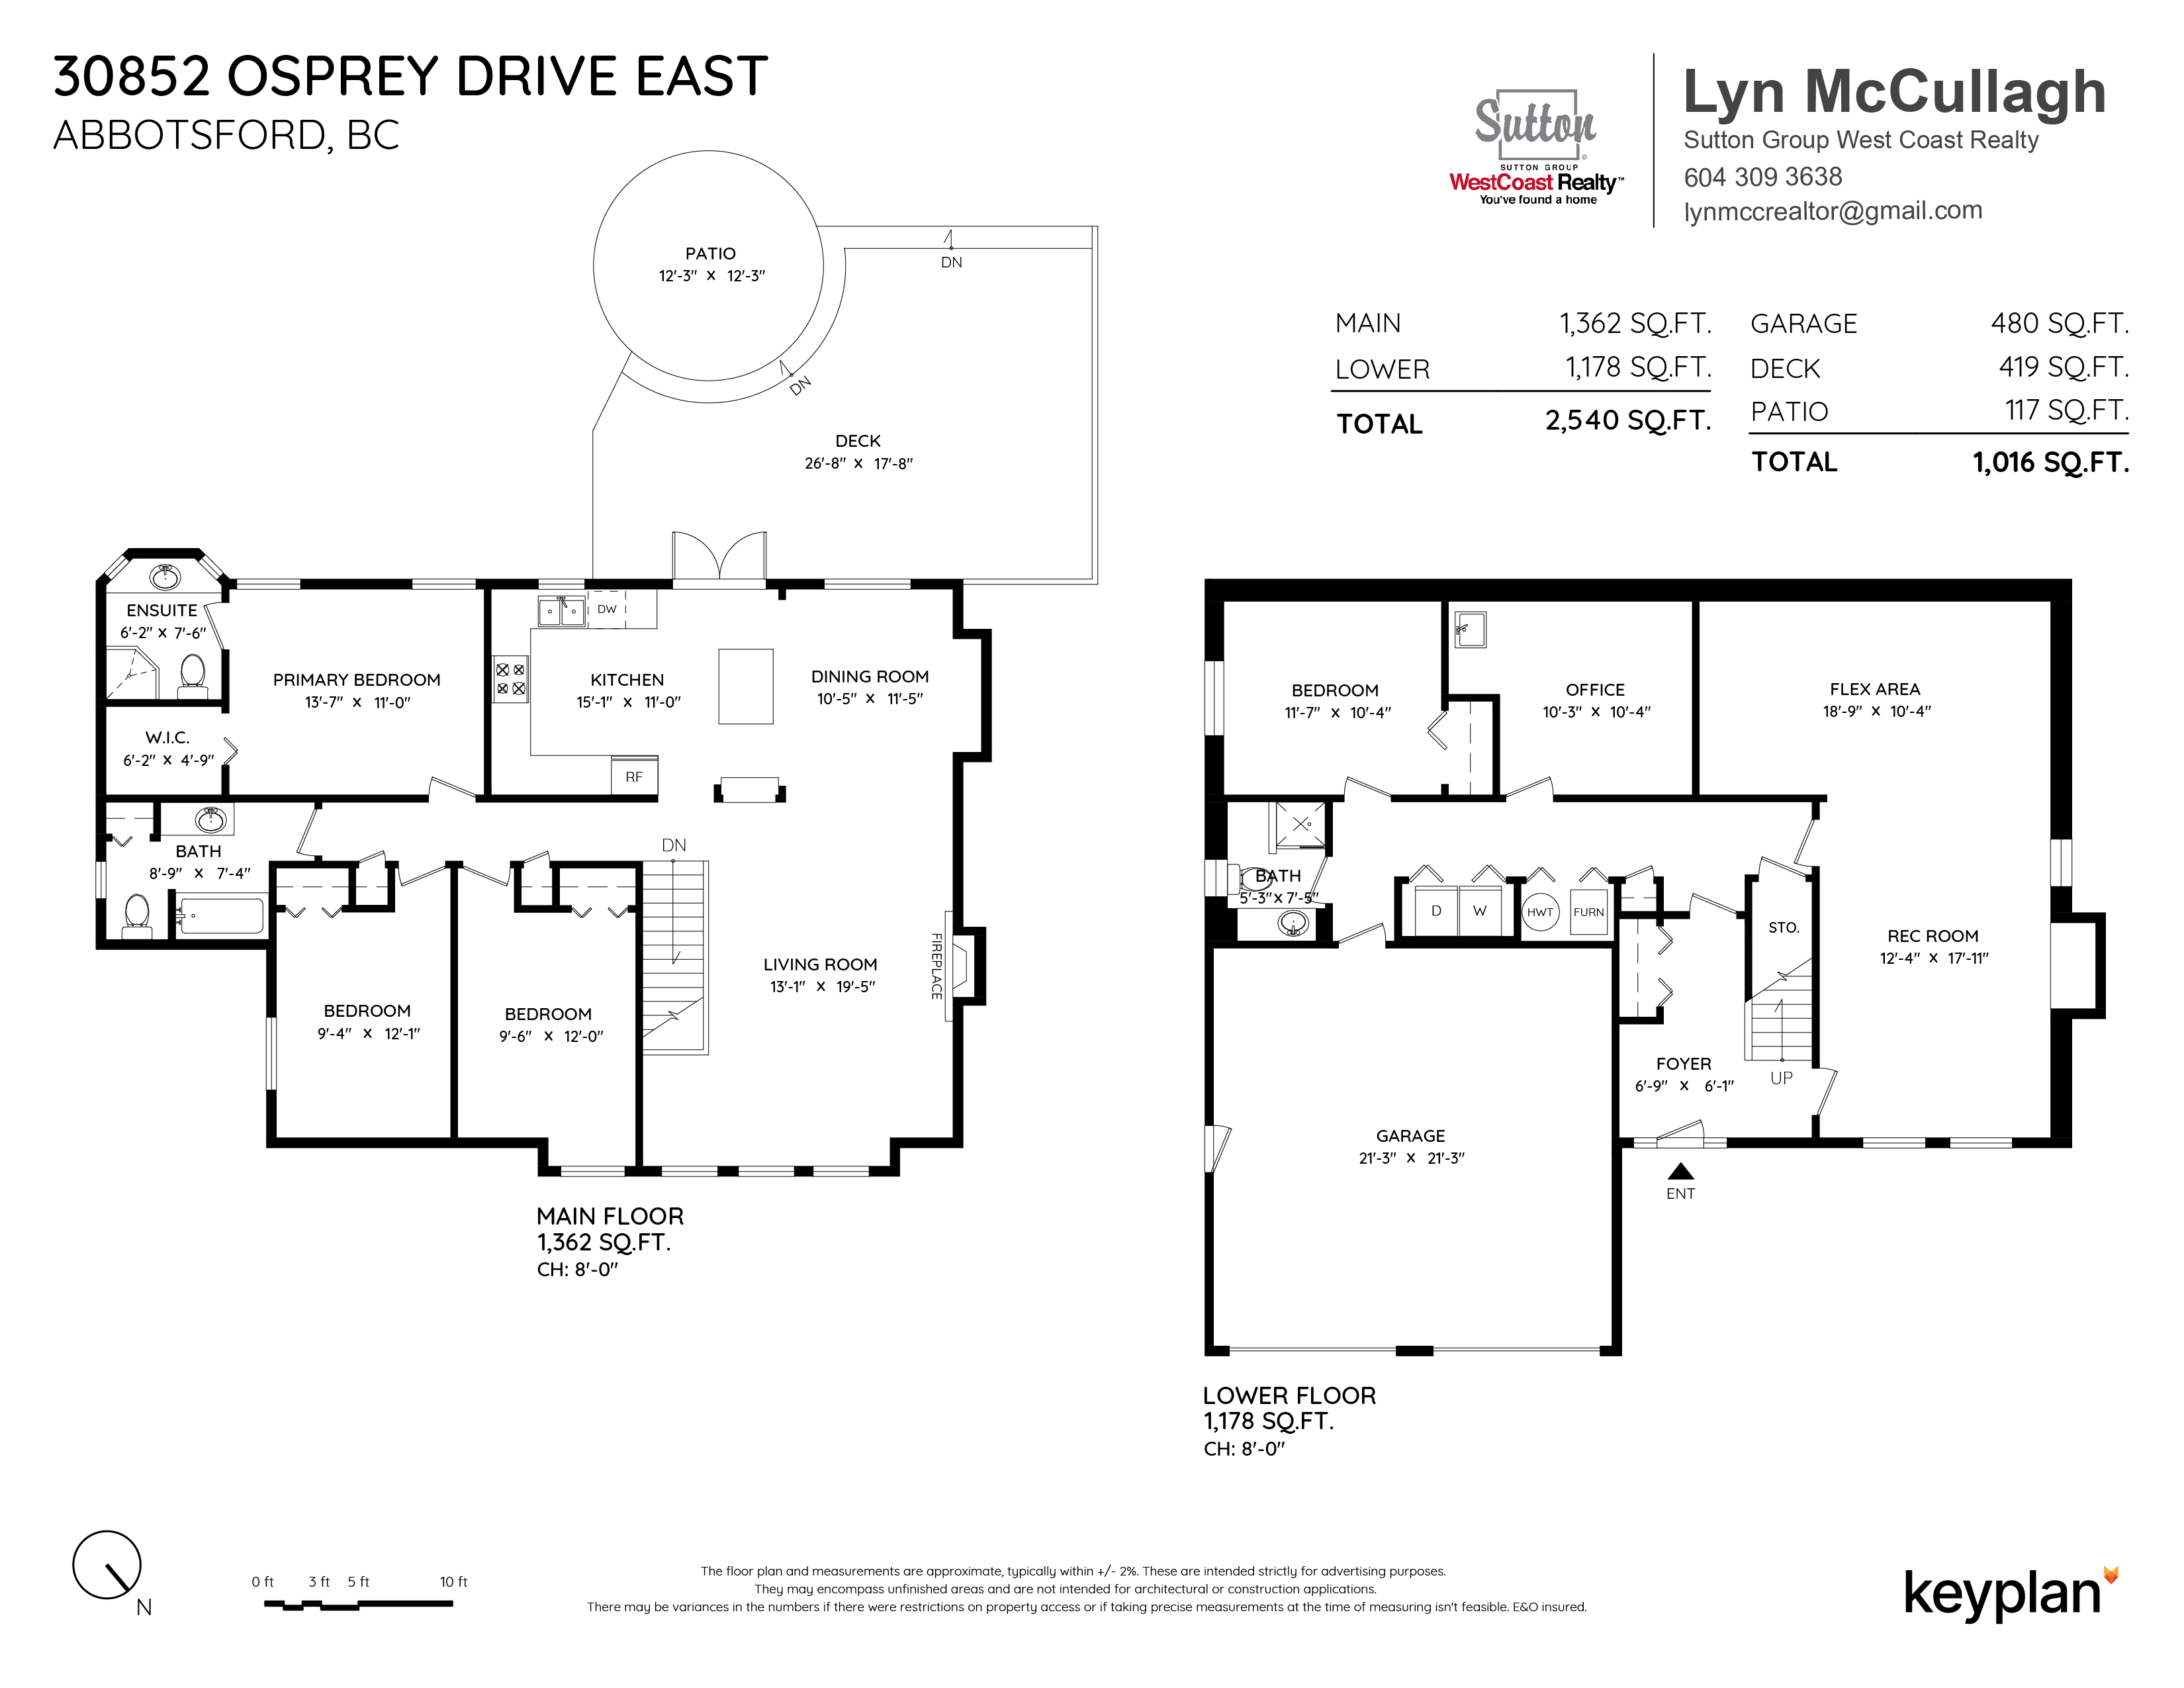 Lyn McCullagh - 30852 Osprey Drive East, Abbotsford, BC, Canada | Floor Plan 1